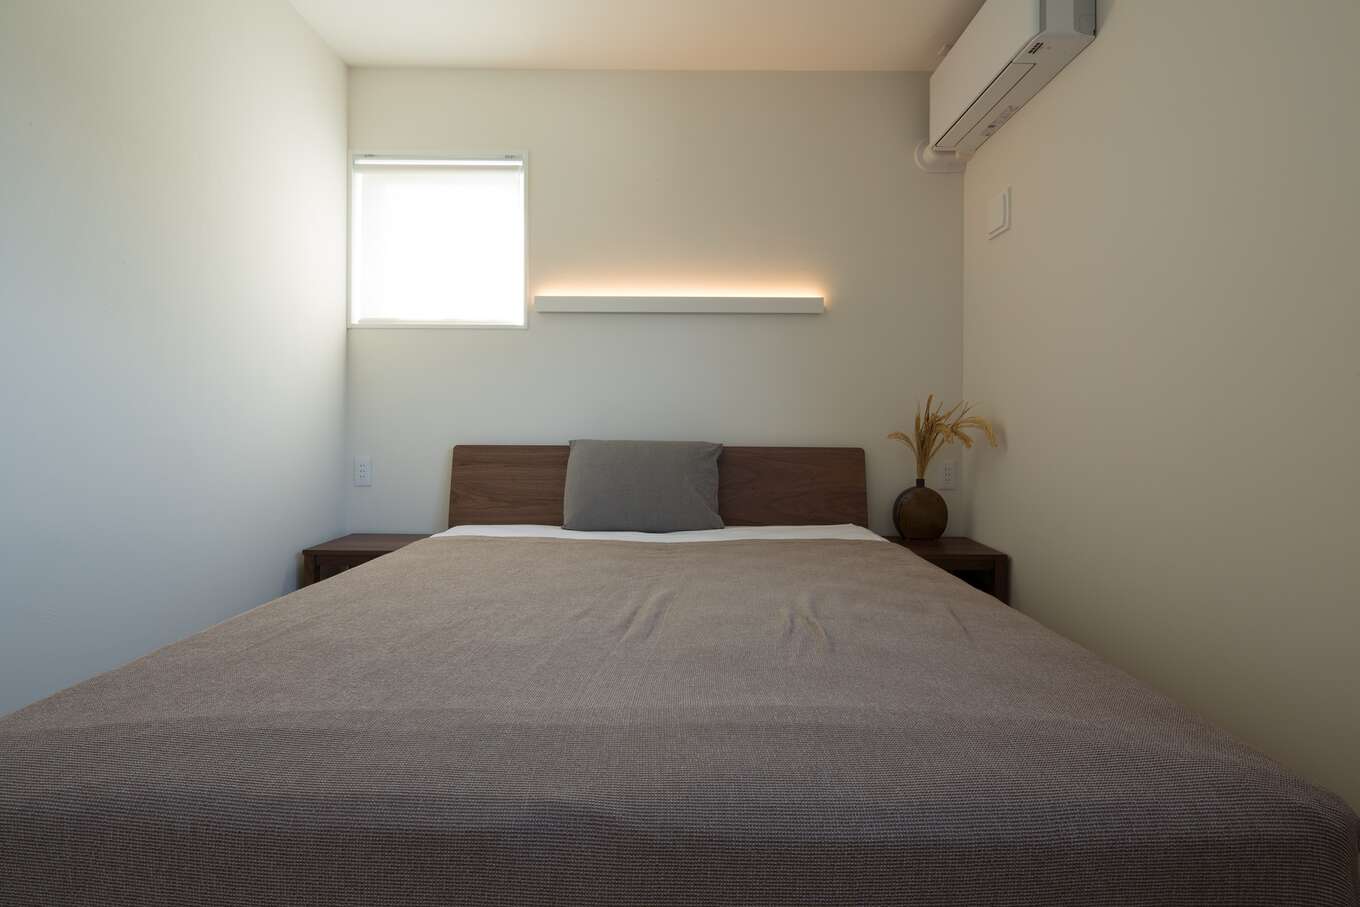 寝室はカーテンではなくロールスクリーンにする事で生活感をなくし、シンプルにまとめている。